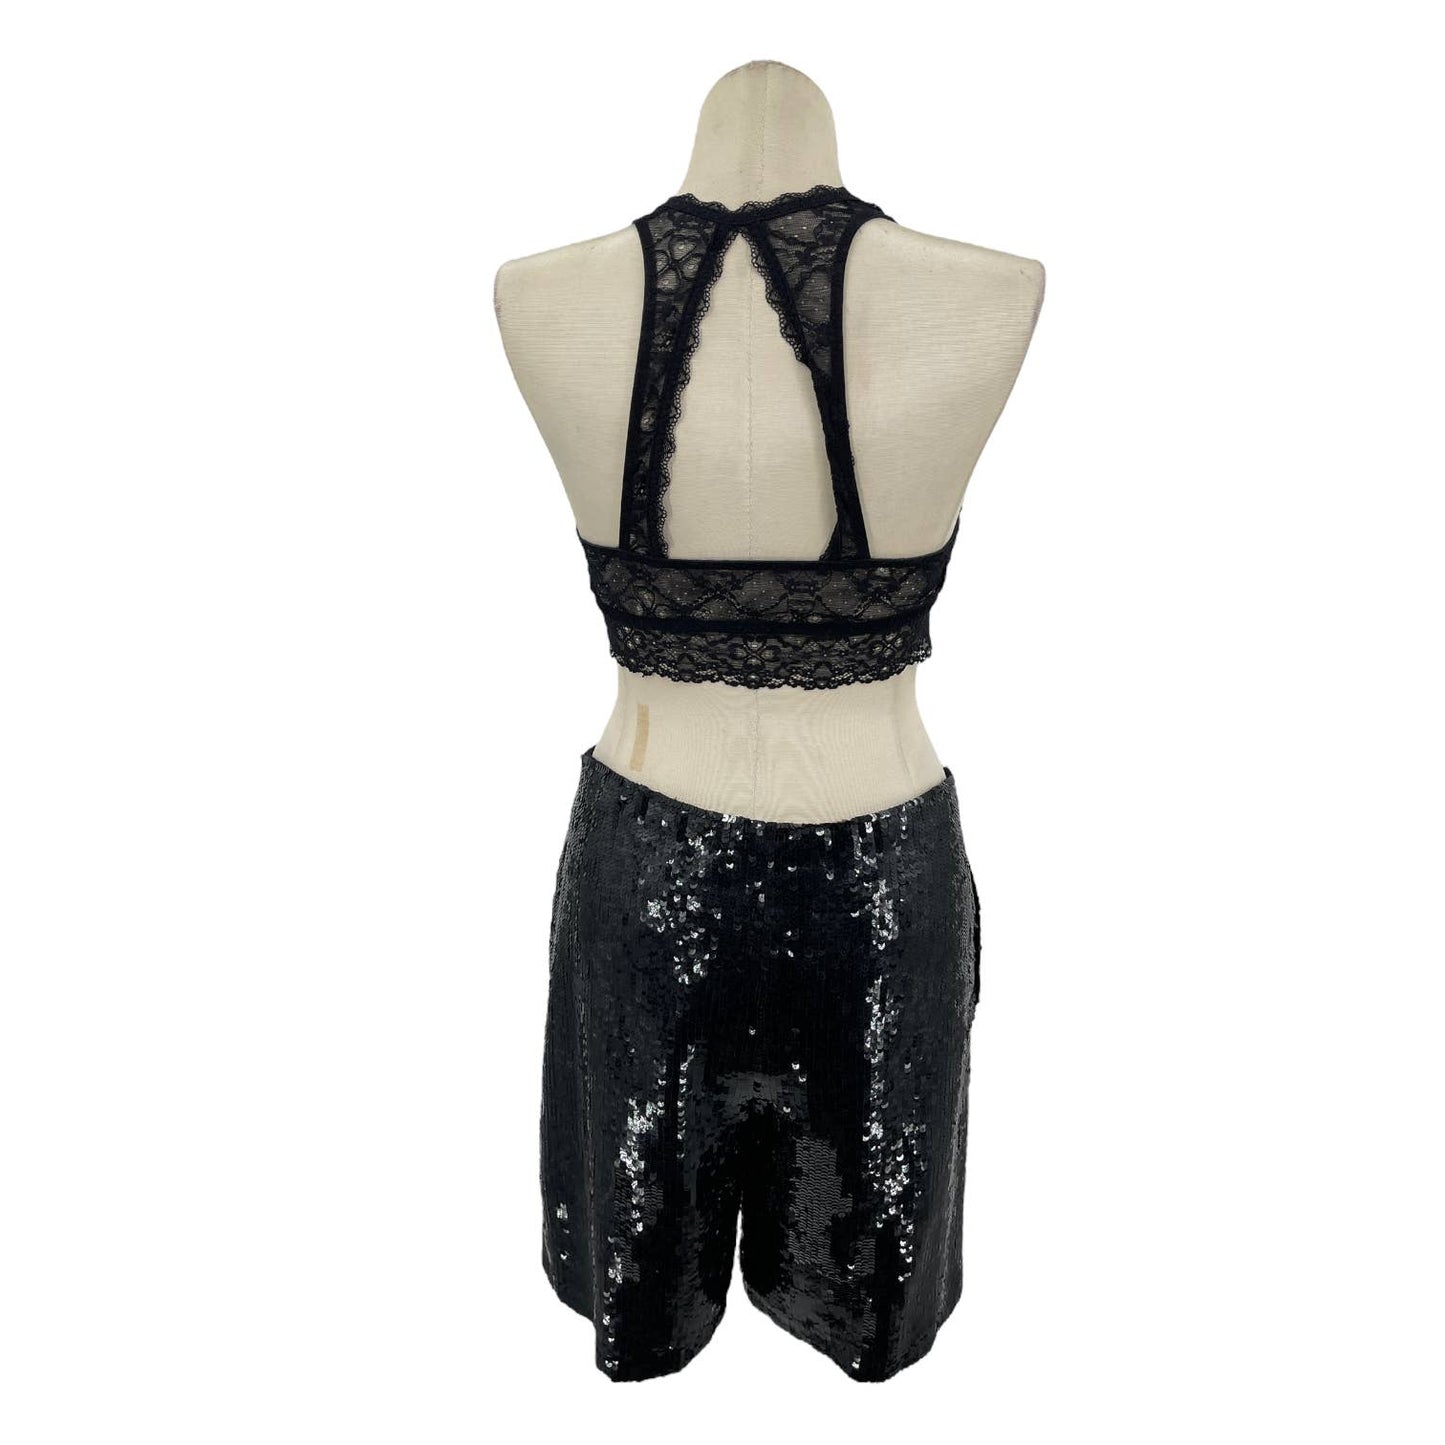 Vintage 90s Black Sequined Dress Shorts Glam Cabaret Lawrence Kazar Size XL